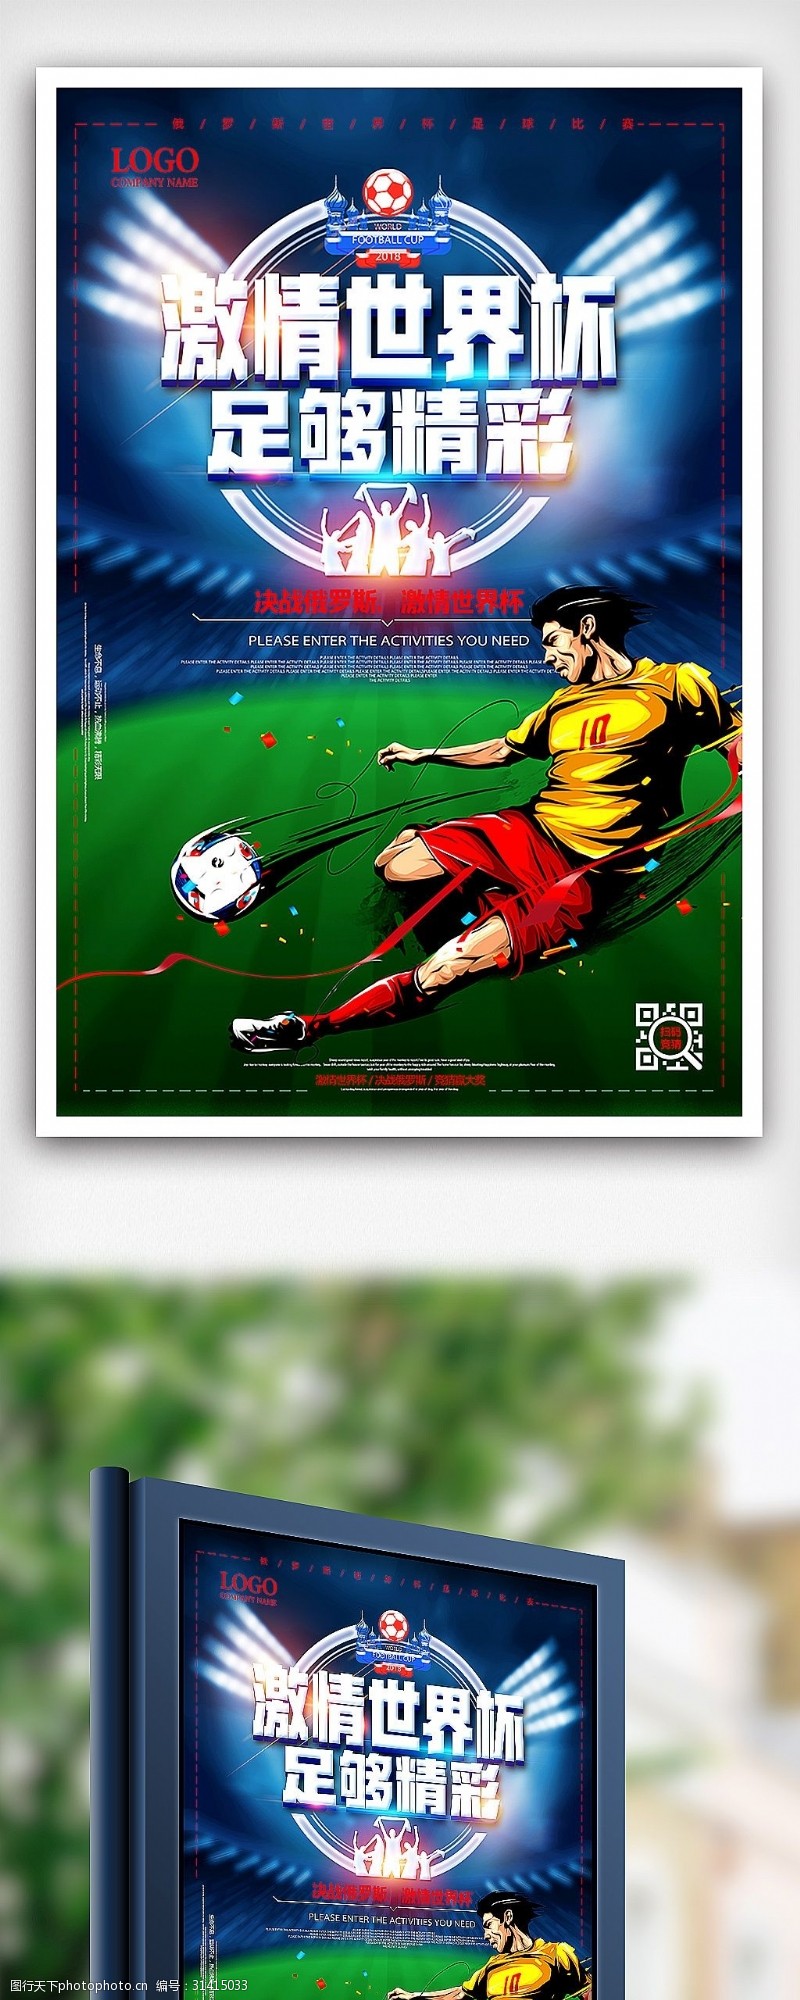 淘宝海报免费下载2018俄罗斯世界杯激情足球赛体育海报